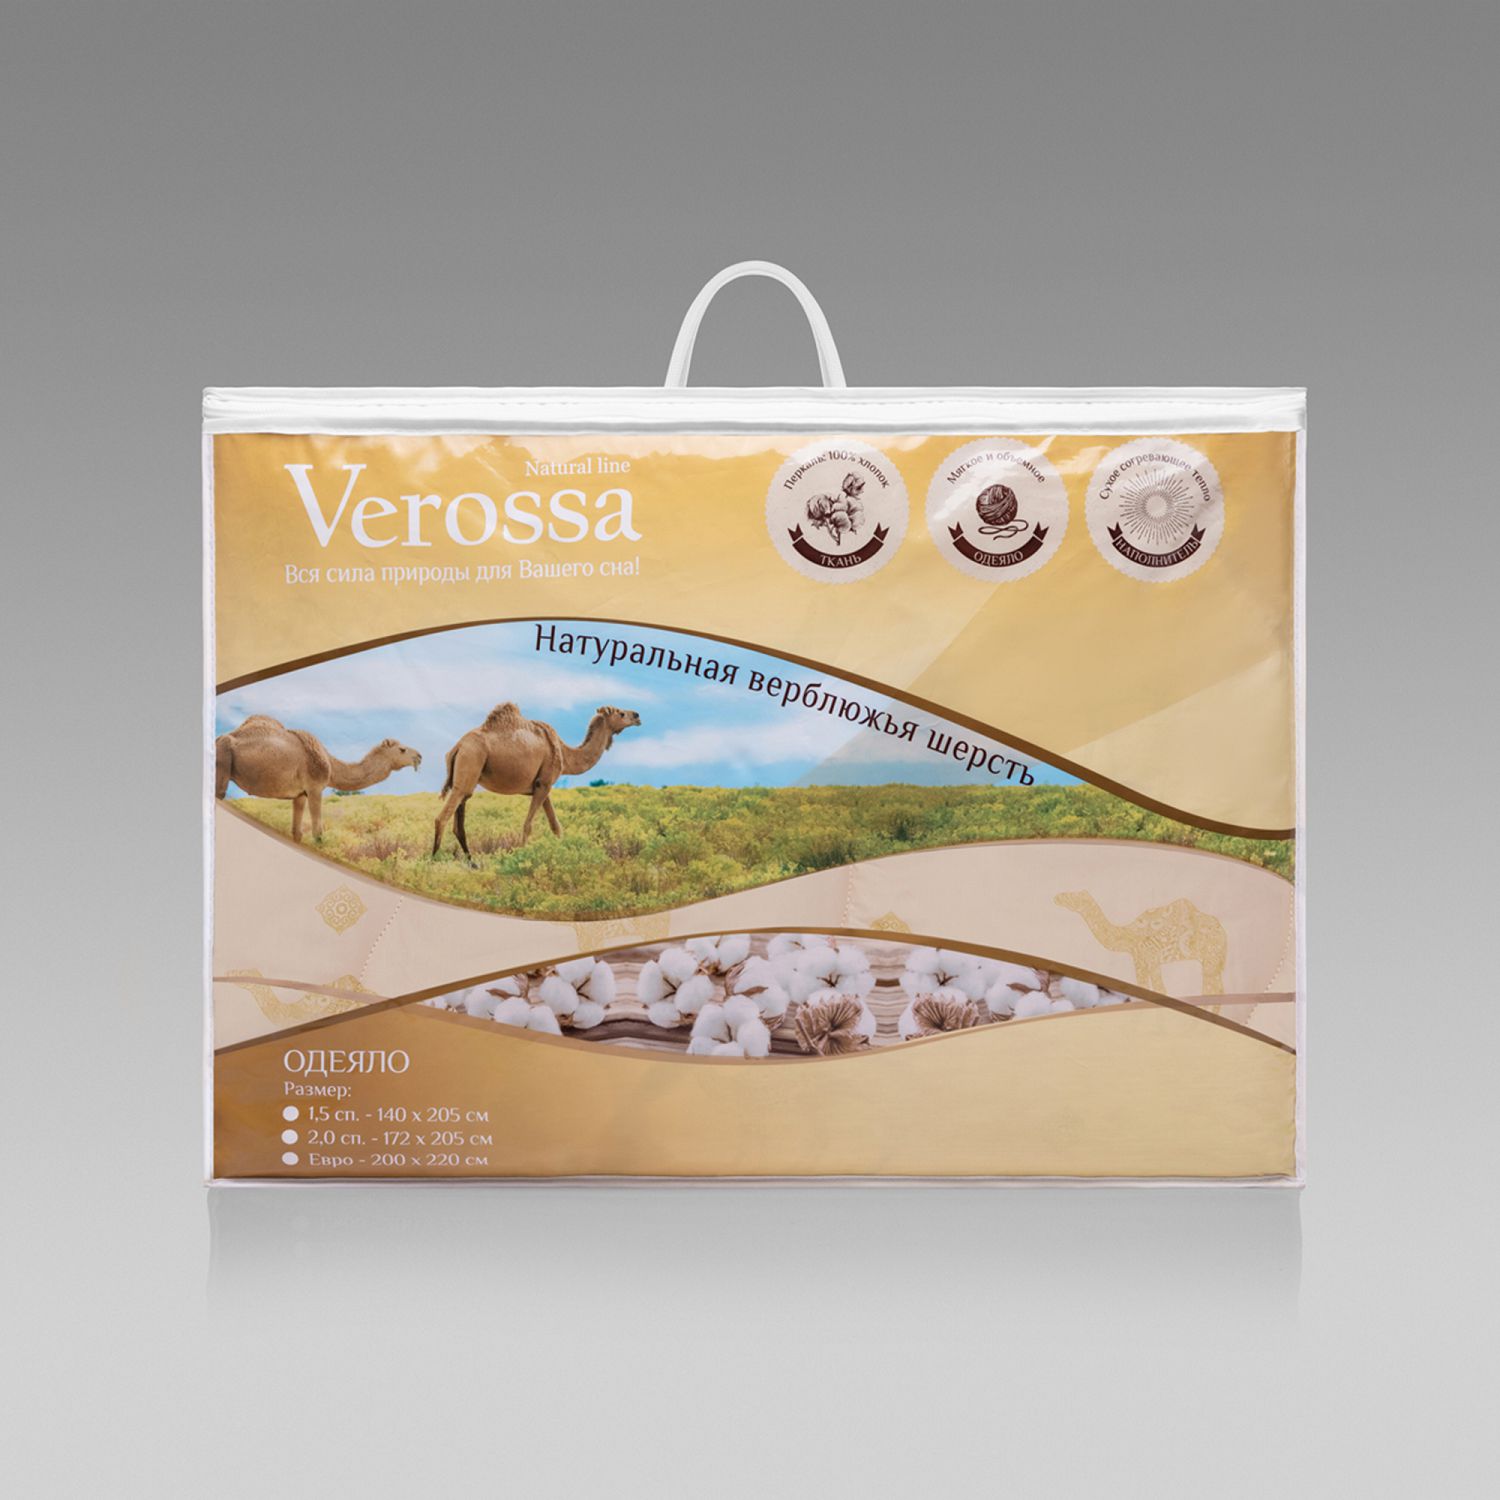 Одеяло 200х220см, Verossa Natural Line Camel, верблюжье волокно, 100% хлопок